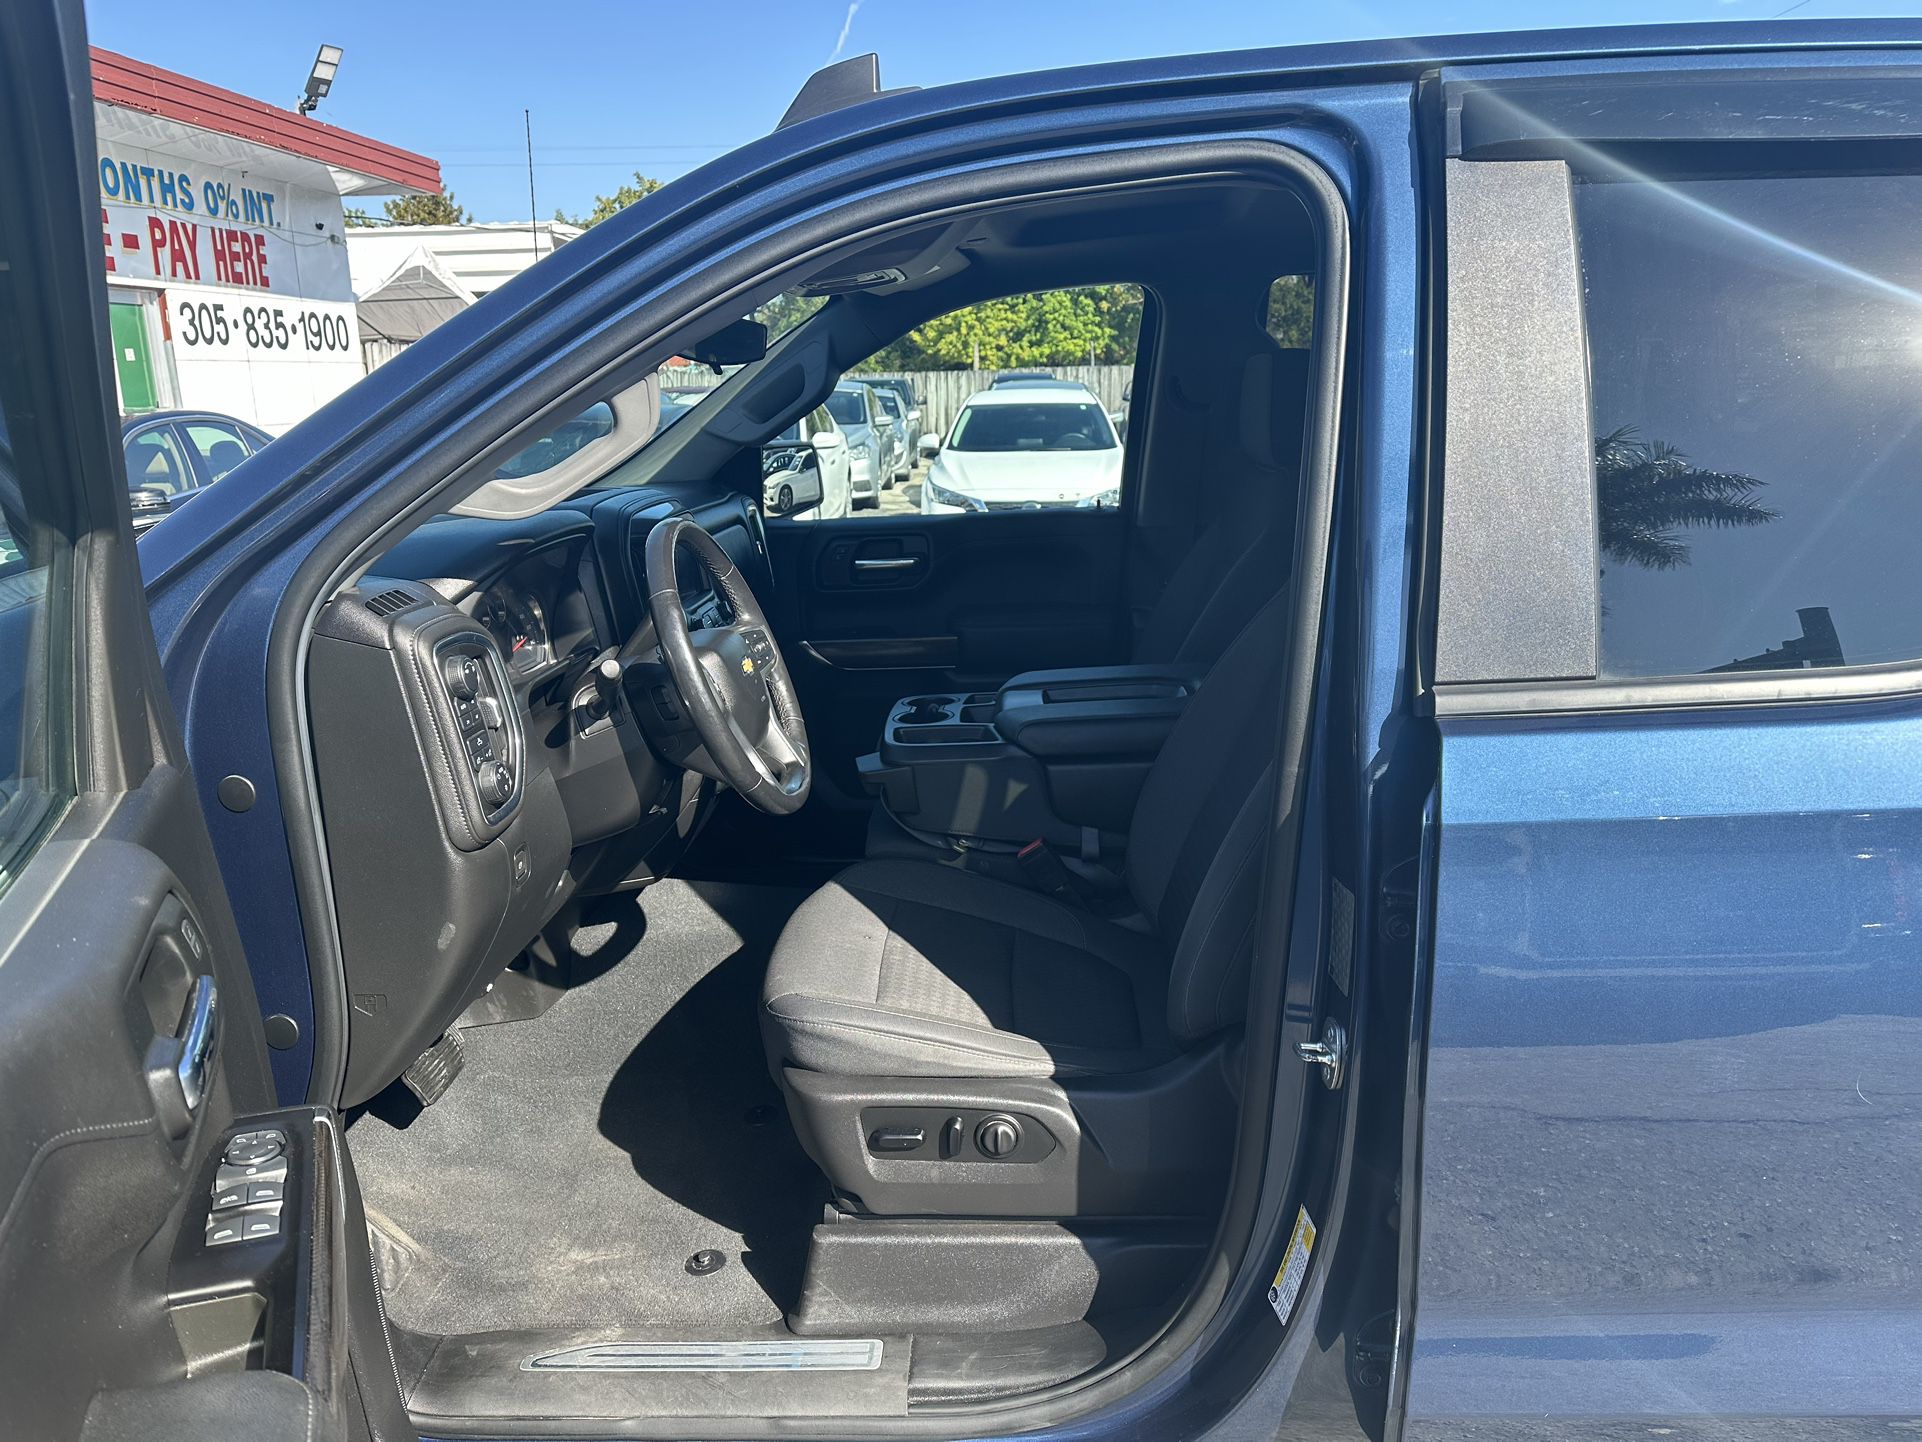 used 2019 Chevrolet Silverado - interior view 2